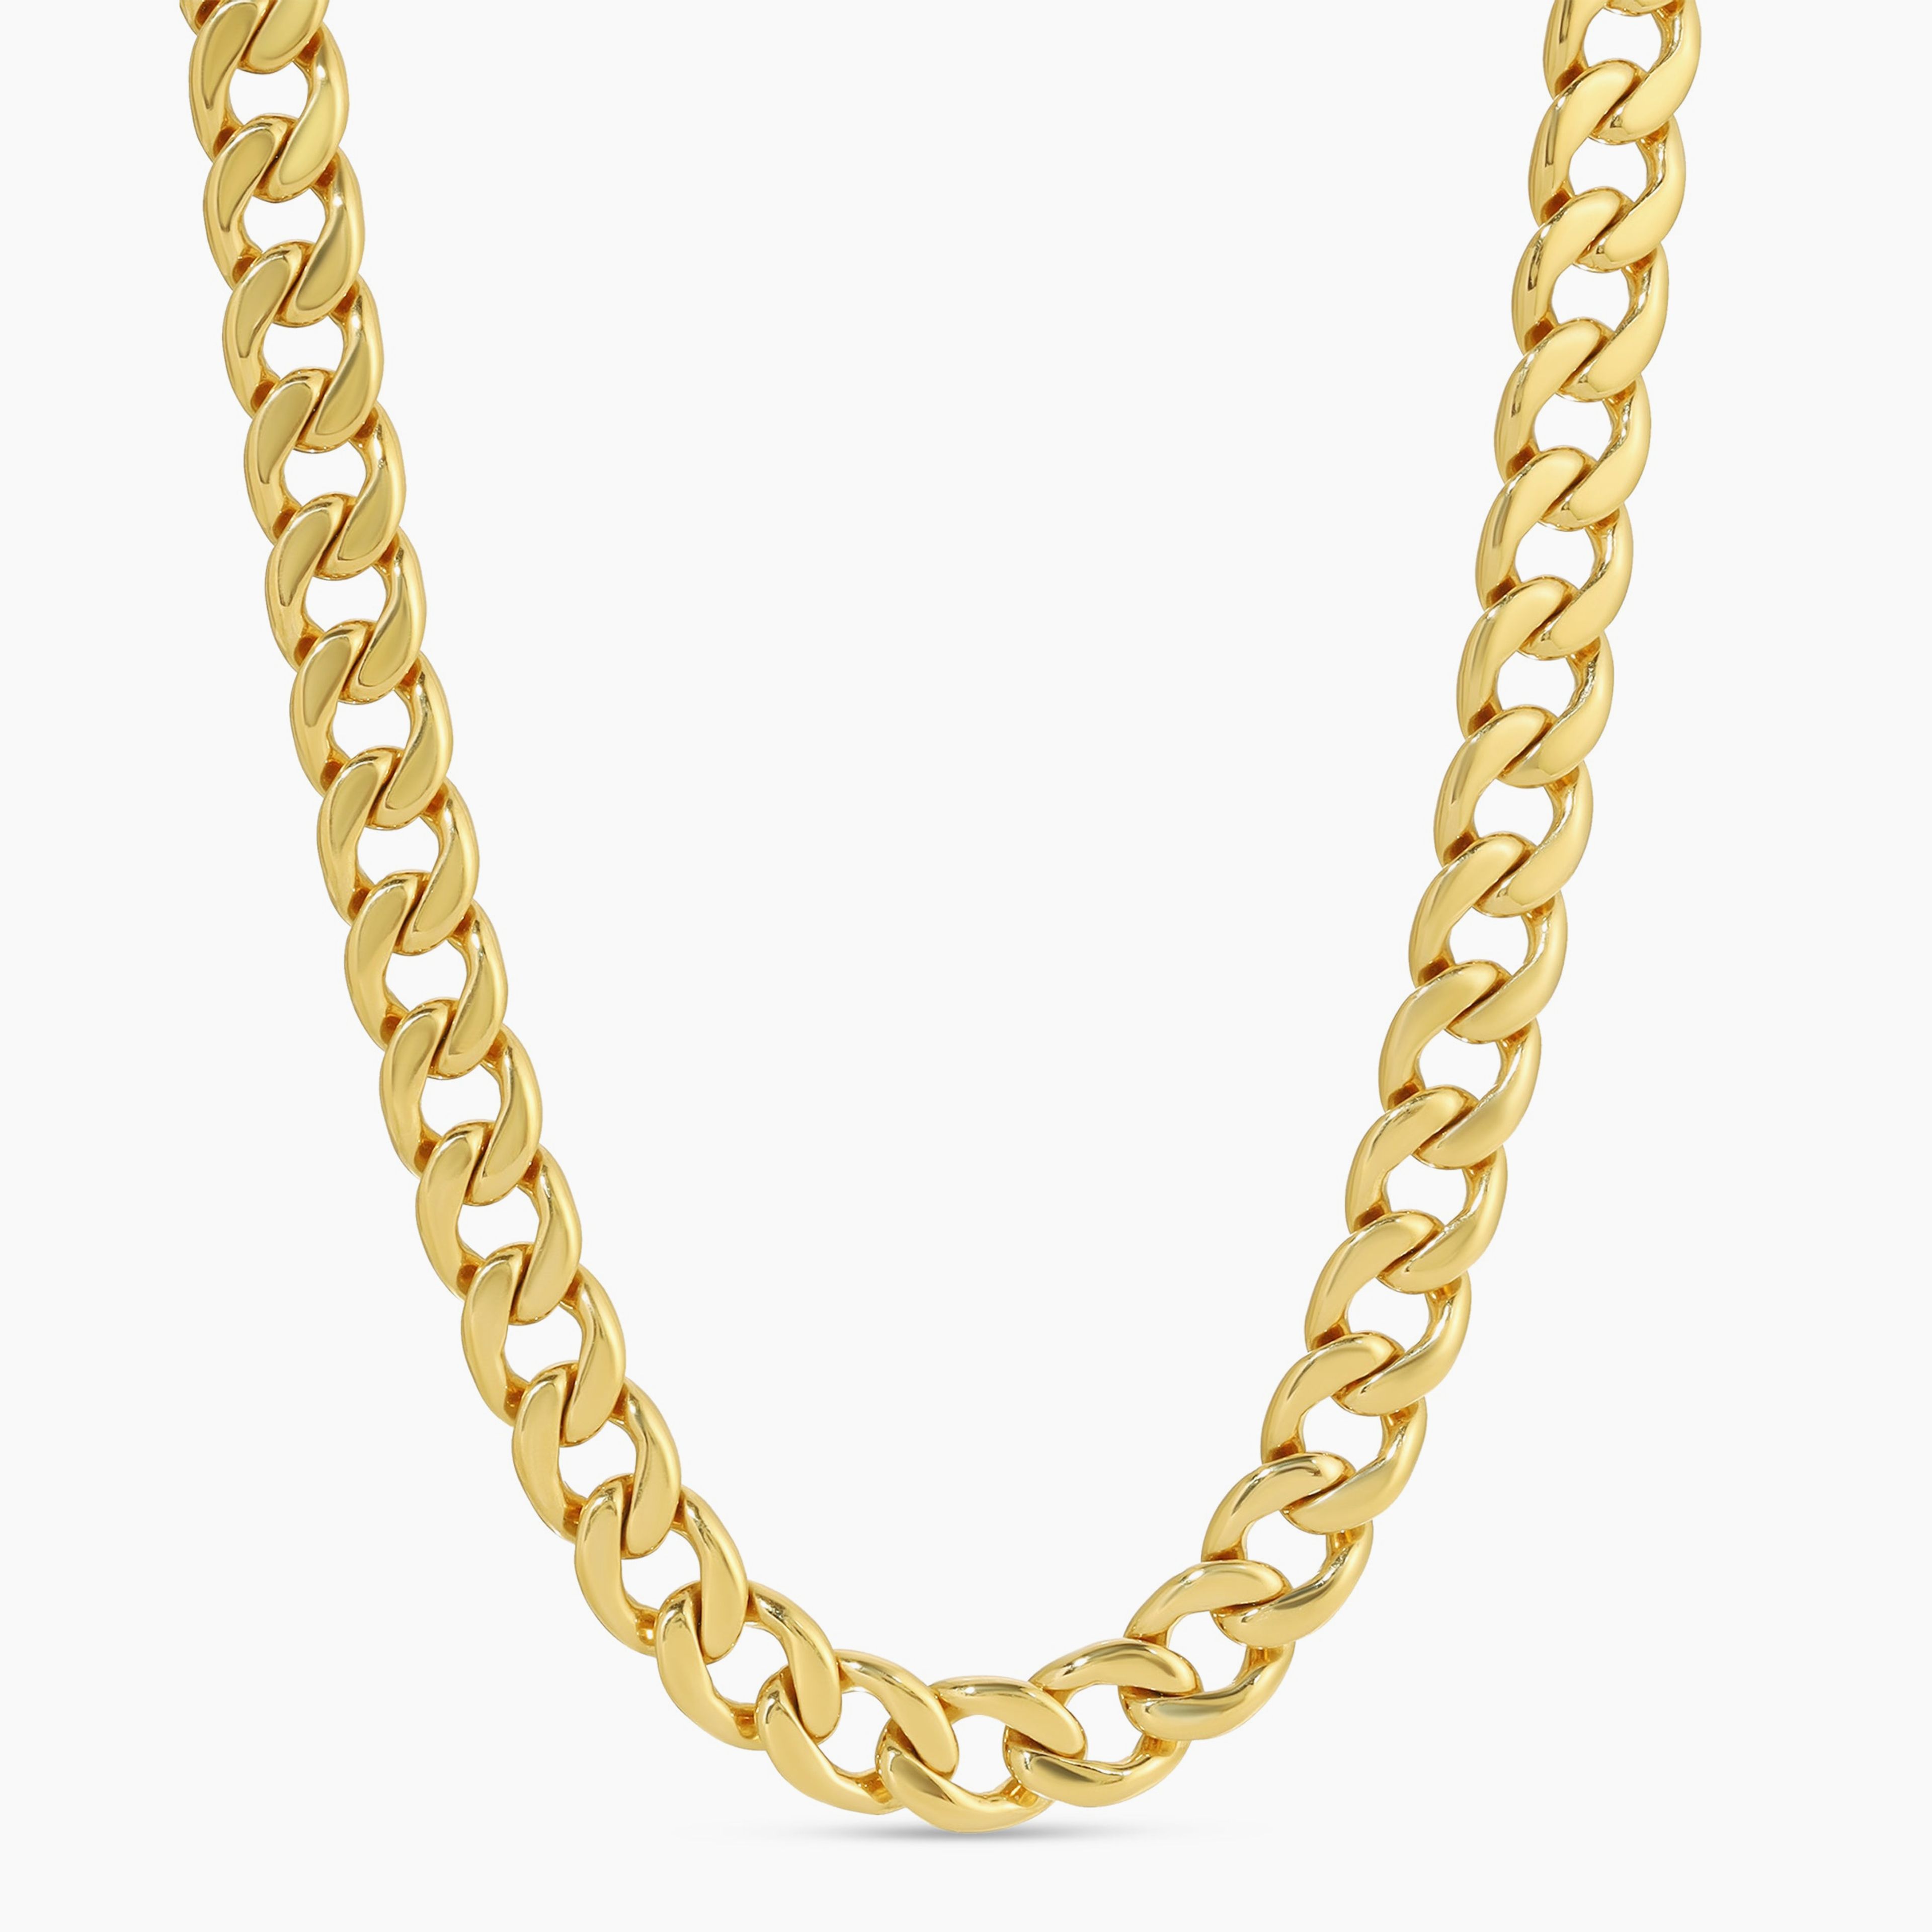 Minx Chain Necklace